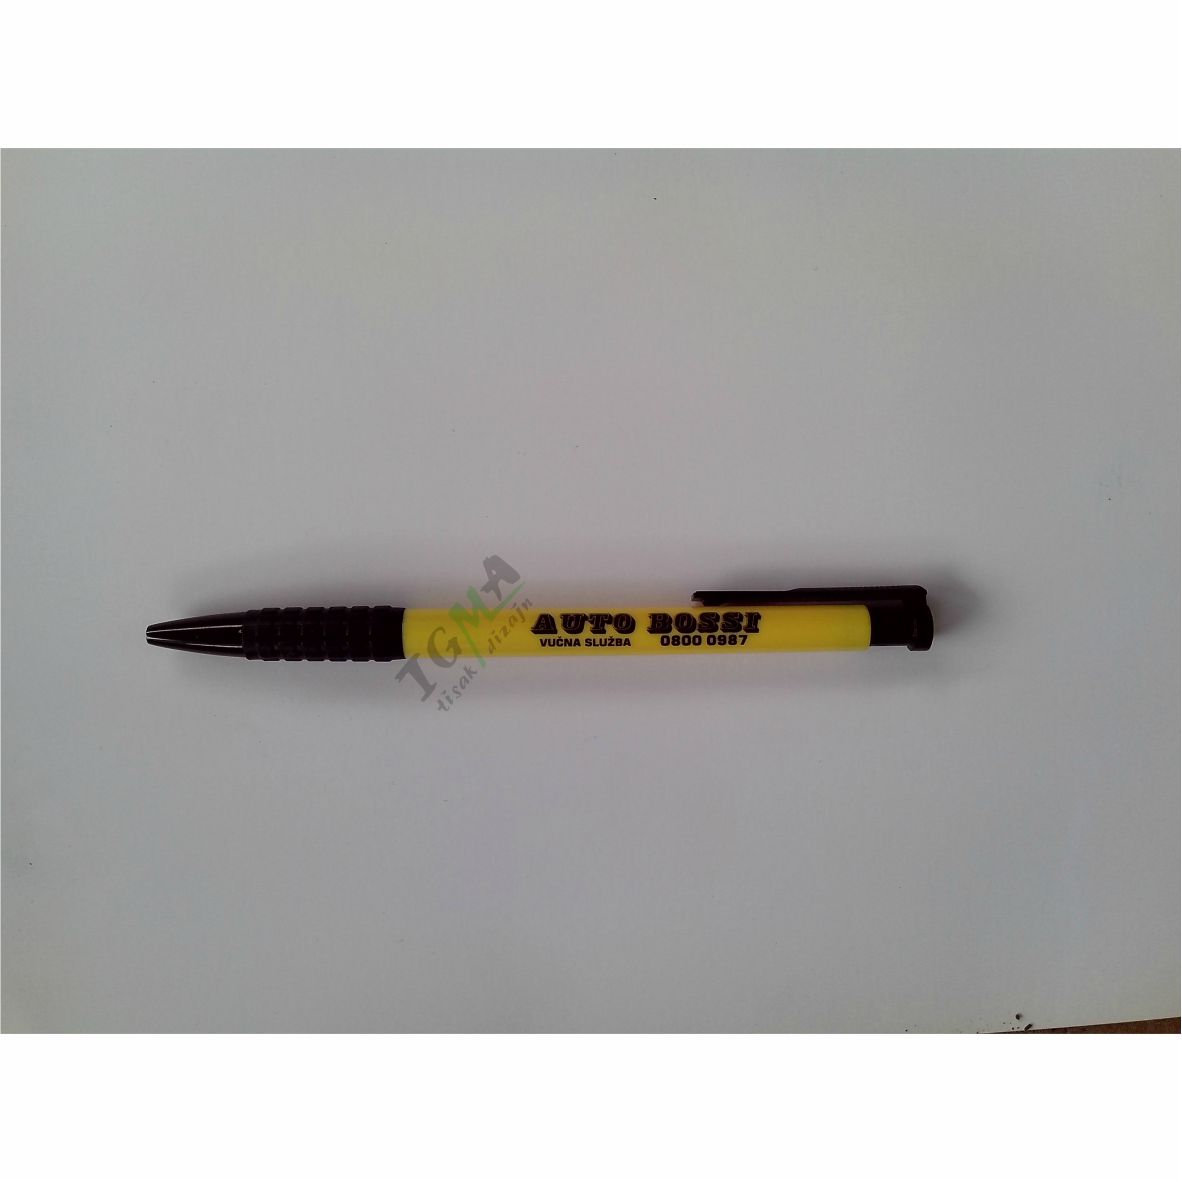 IGMA kemijska olovka AUTOBOSSI